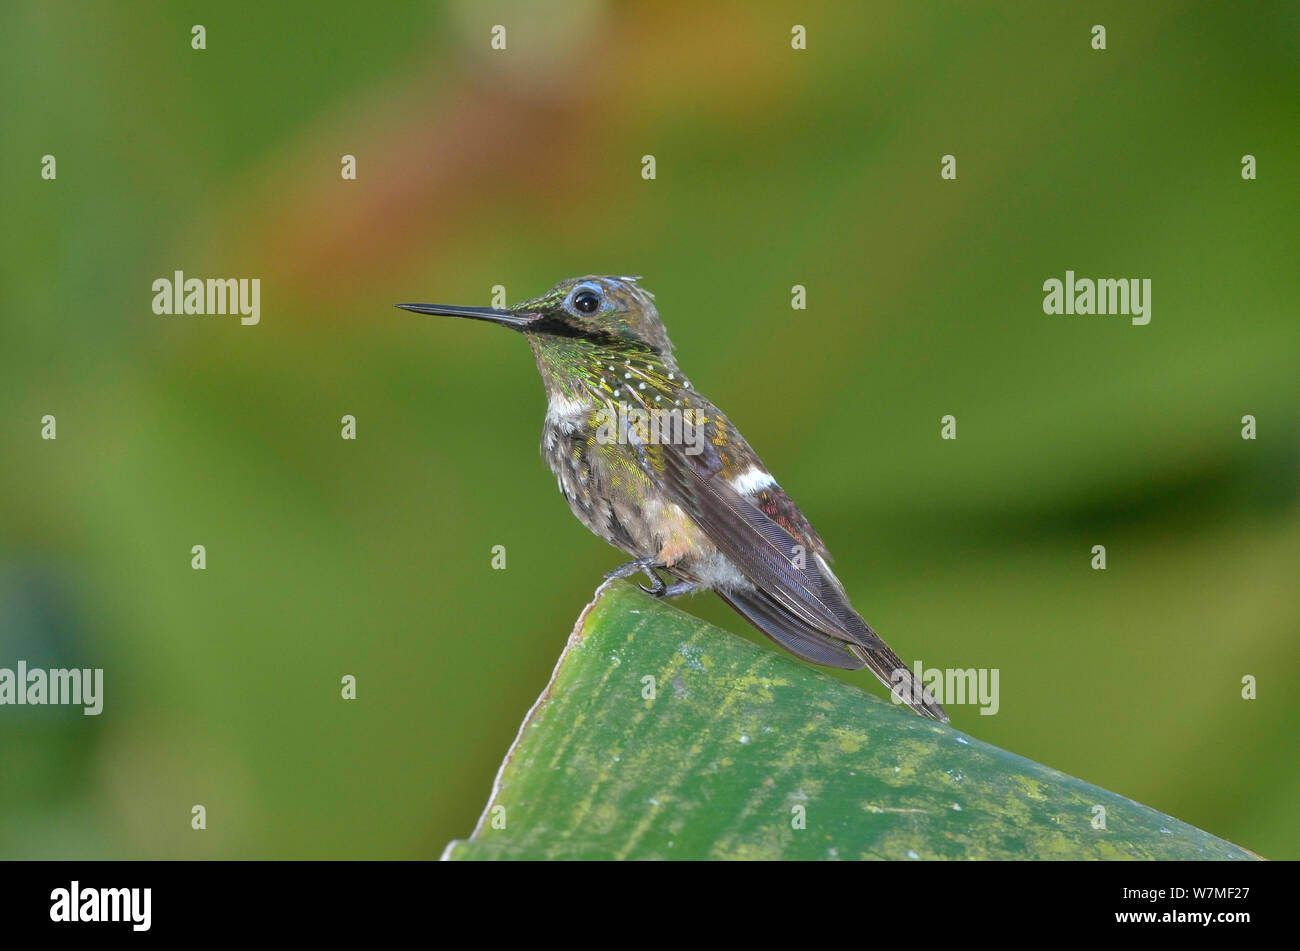 Coquette de fête (Lophornis chalybeus hummingbird) mâle perché sur feuille dans la Forêt Tropicale Atlantique, municipalité de Ubatuba, littoral de l'État de Sao Paulo, Brésil. Banque D'Images